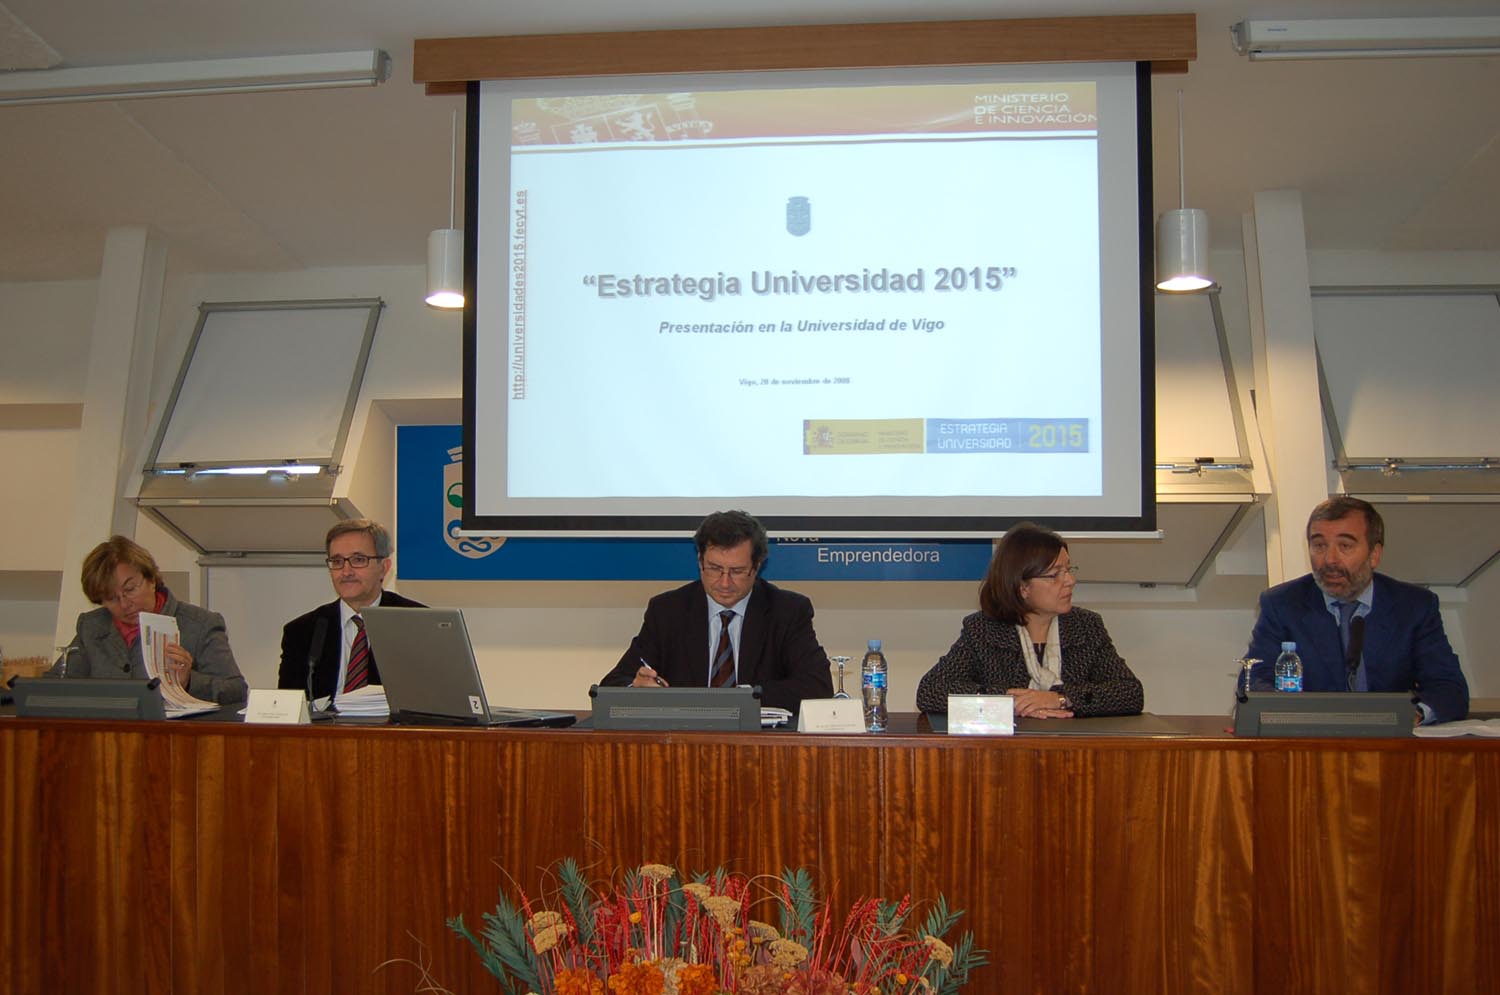 El secretario de Estado de Universidades presenta la Estrategia Universidad 2015 en la Universidad de Vigo